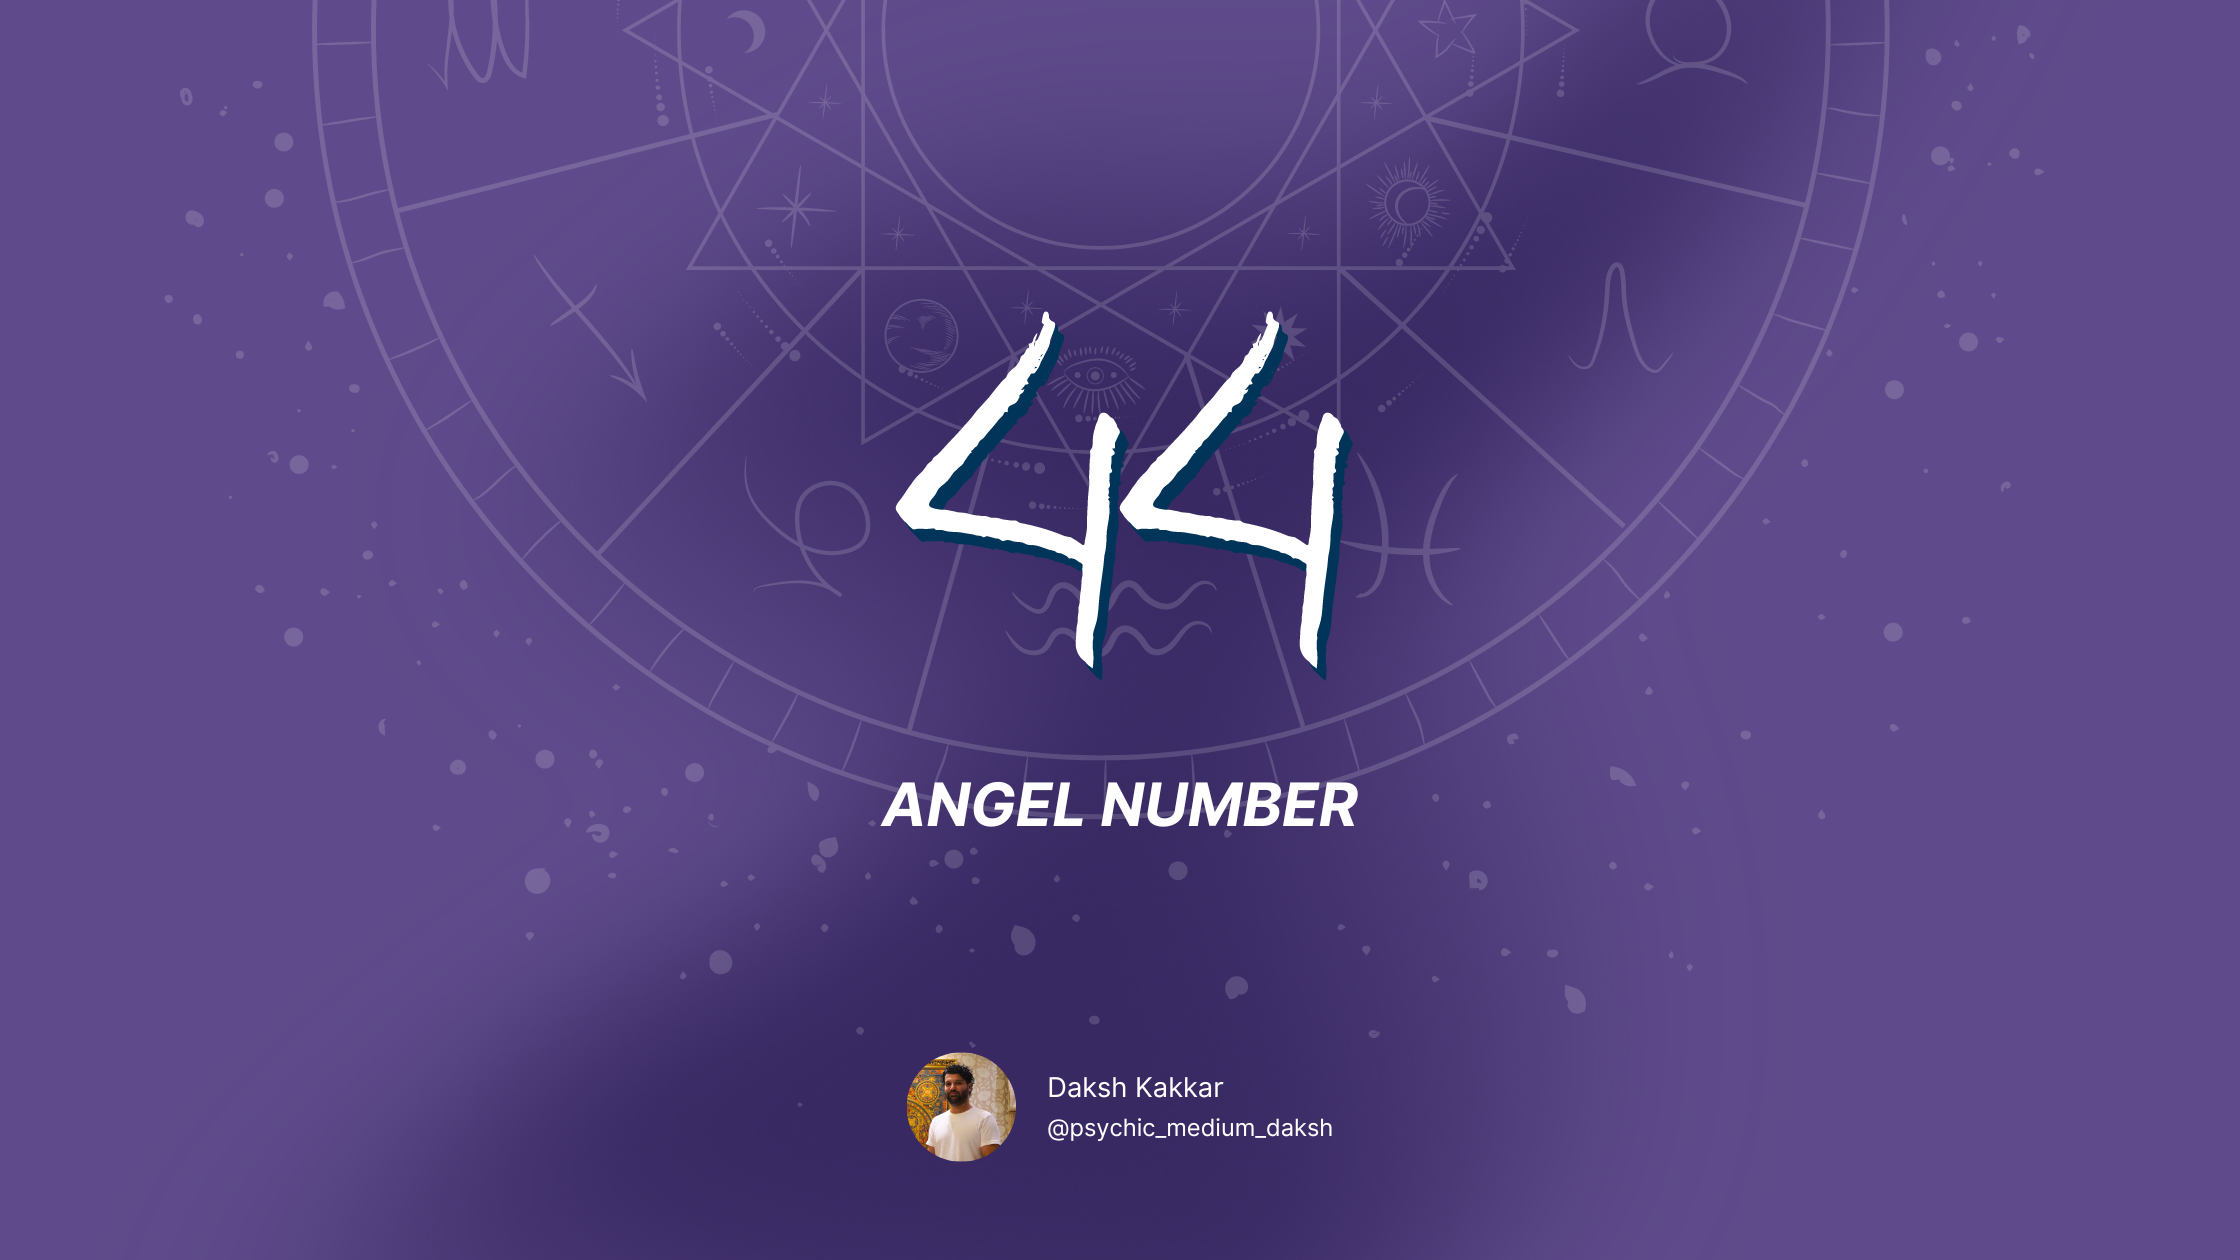 44 angel number